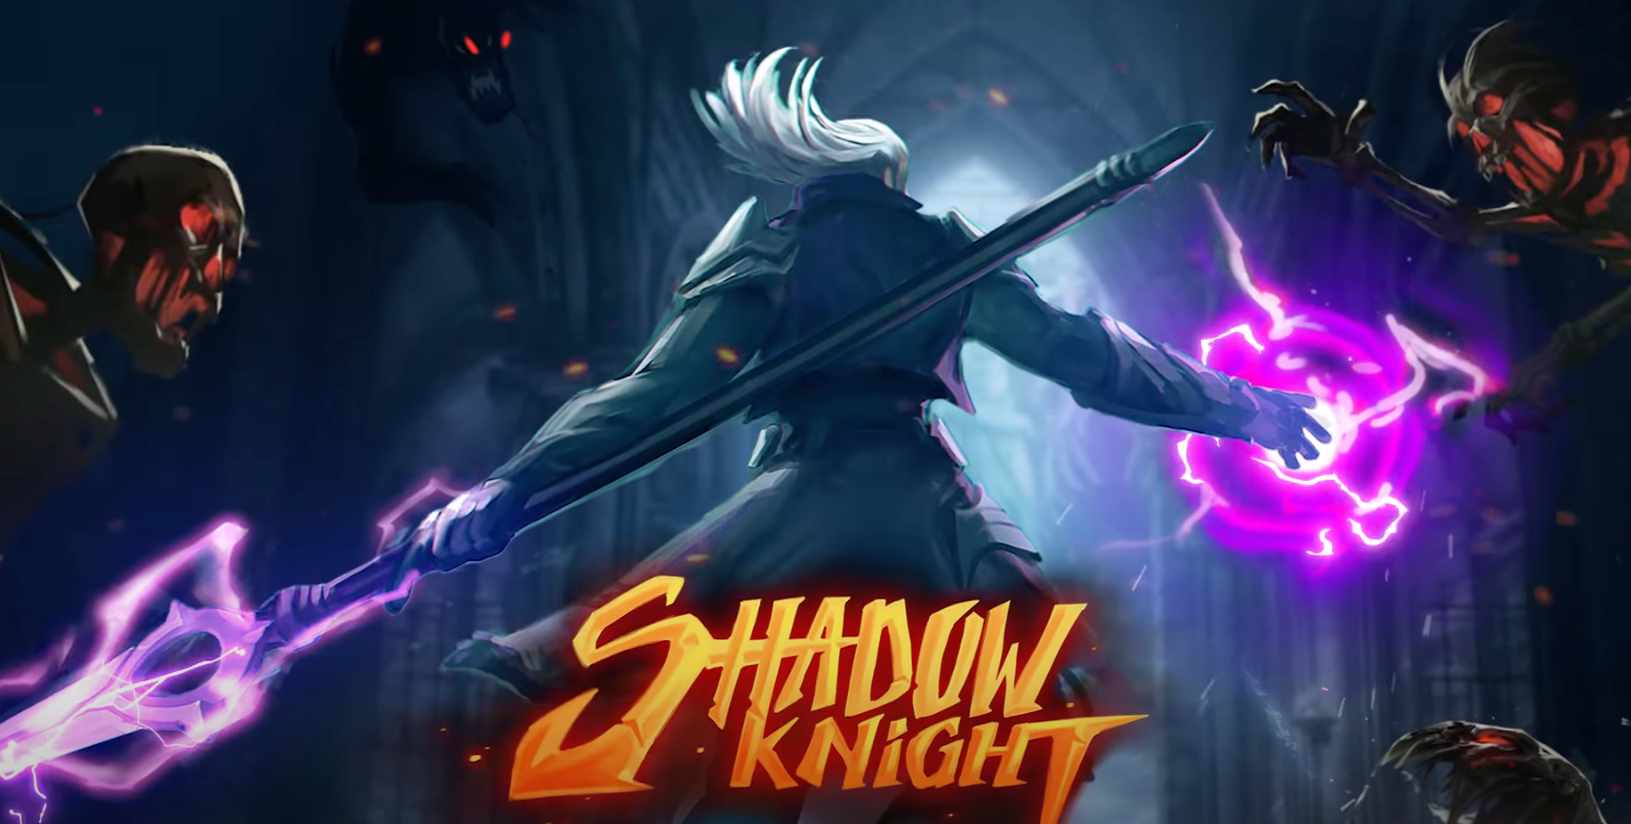 Hack Shadow Knight: Ninja MOD (Menu Pro, Full Tiền, Kim Cương, Không Bị Giết, Nhân vật, Cấp Độ Max, Bot Ngu) APK 3.7.539.202345315